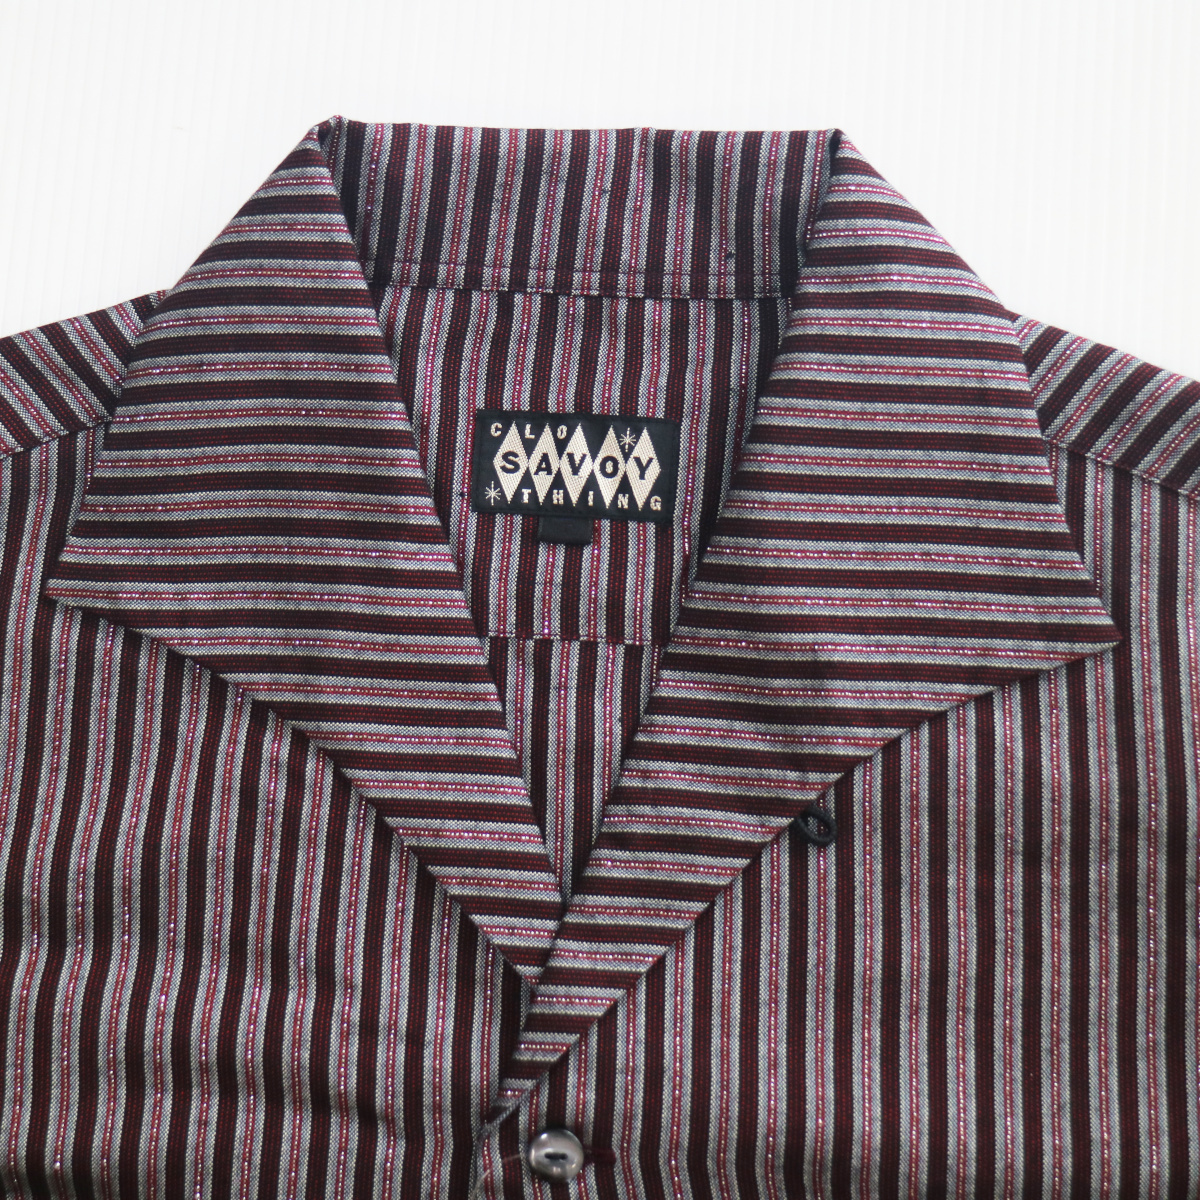 シャツ 長袖 メンズ ロカビリーファッション Lame Stripe Italian Shirts サイズL ブランド SAVOY CLOTHING_画像6